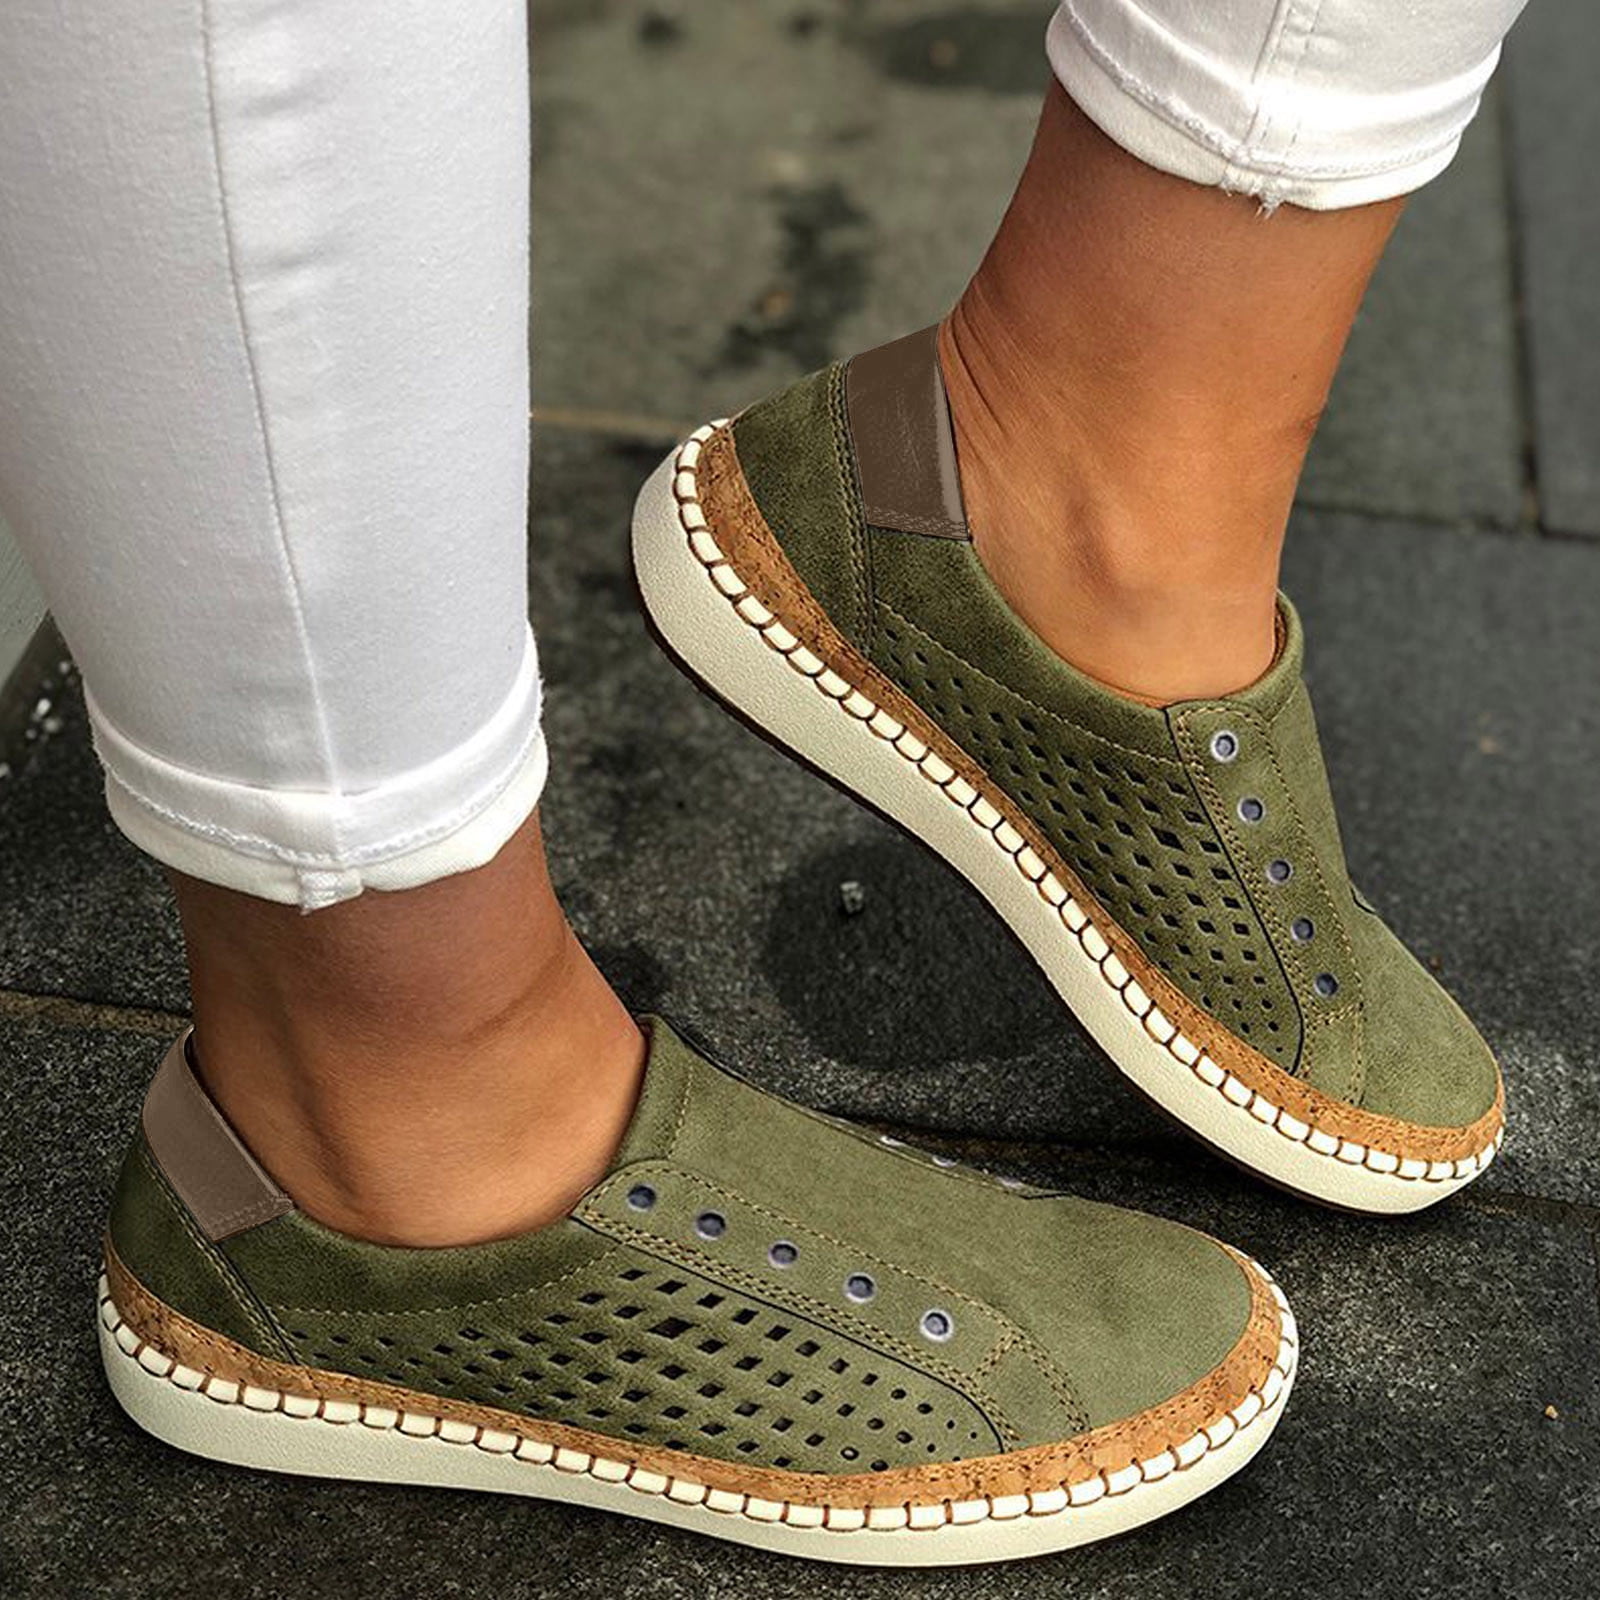 Herrnalise Women's Slip On Shoes Slip-On Comfort Fashion